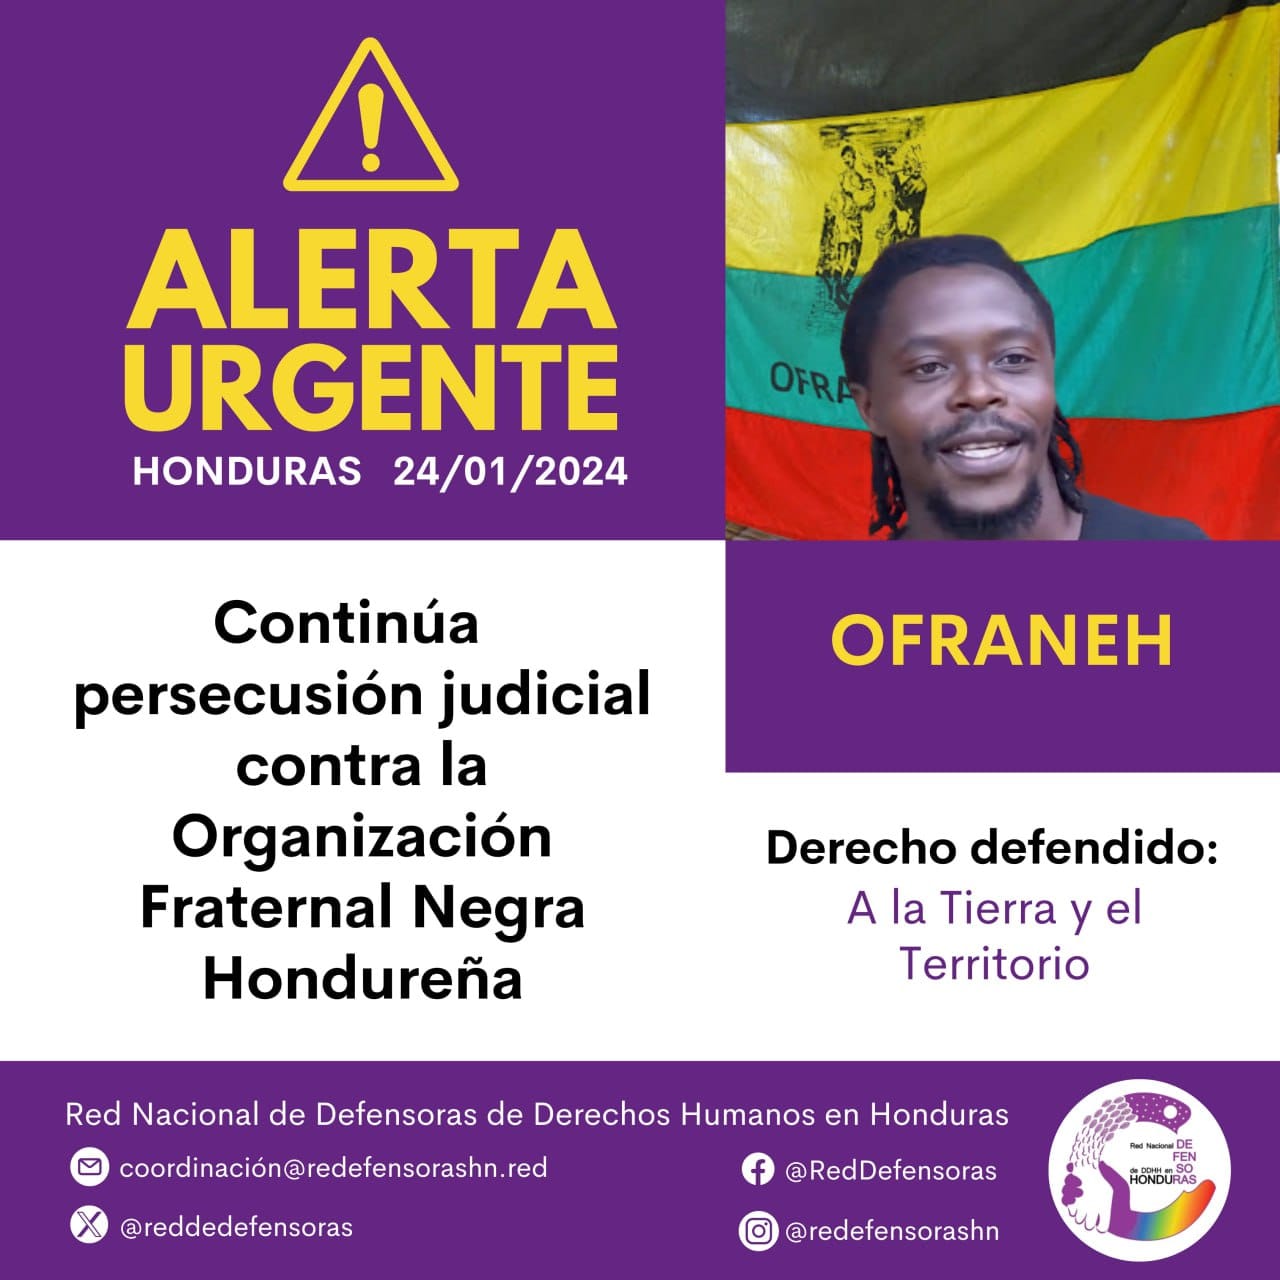 #AlertaUrgente│Continúa persecusión judicial contra la Organización Fraternal Negra Hondureña (OFRANEH).